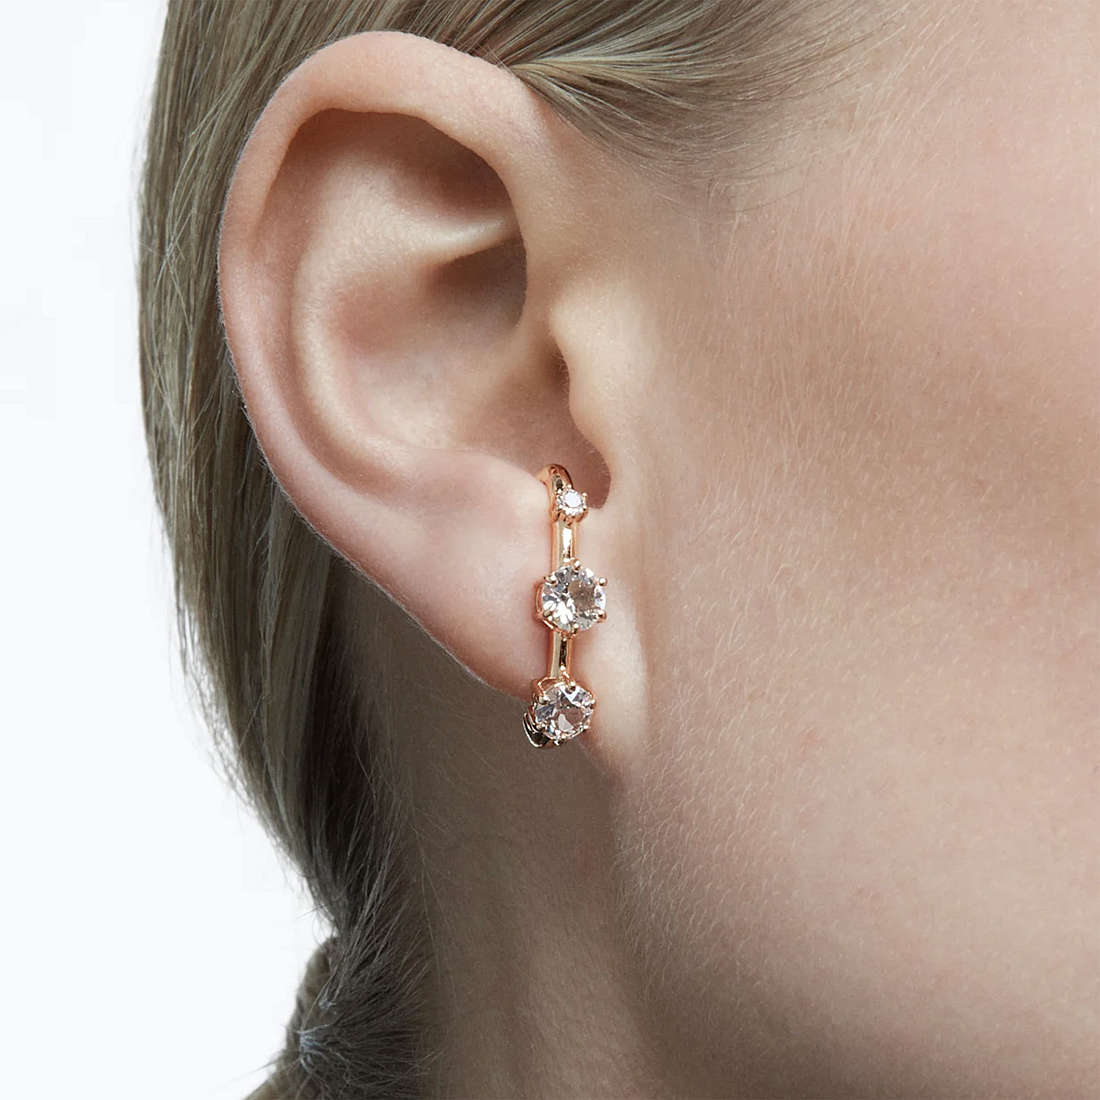 Swarovski earrings Constella woman 5620130 wearing